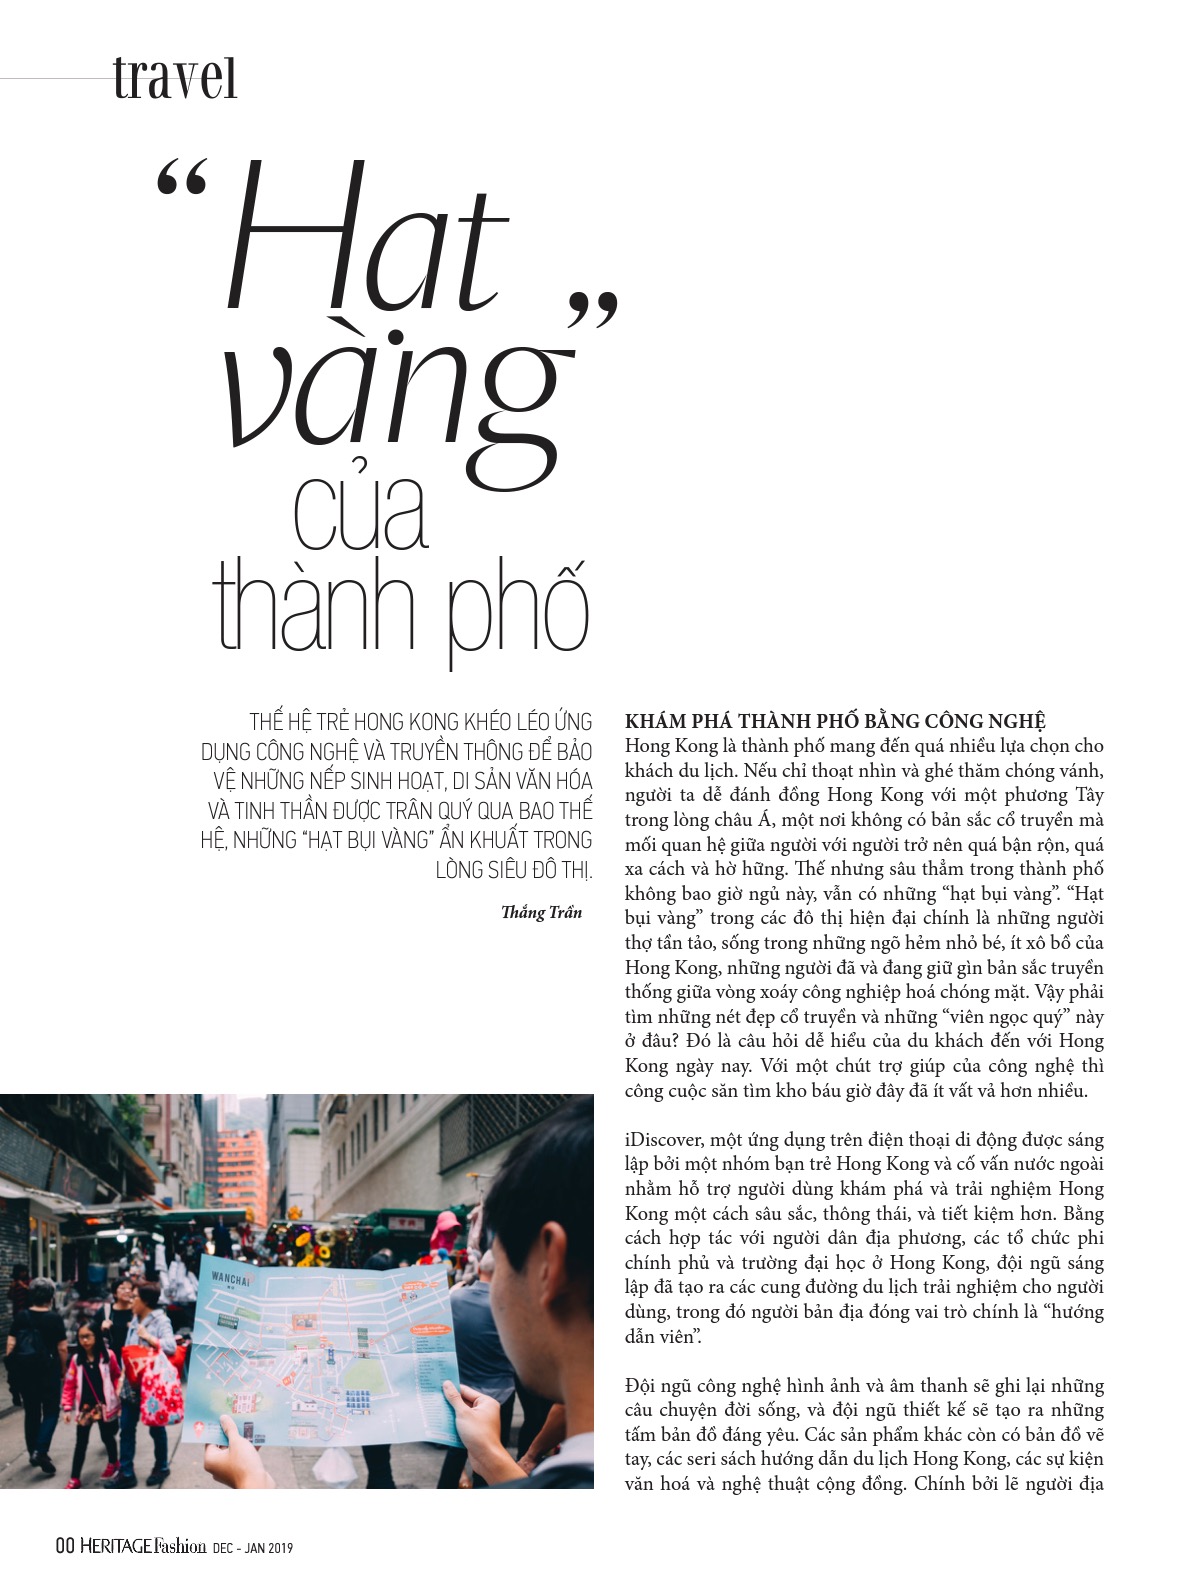 Thang Tran - một tên tuổi đã trở nên quen thuộc trong cộng đồng nghệ sĩ. Thưởng thức các tác phẩm của Thang Tran để khám phá những nét đặc trưng và sự tinh tế của nghệ thuật.